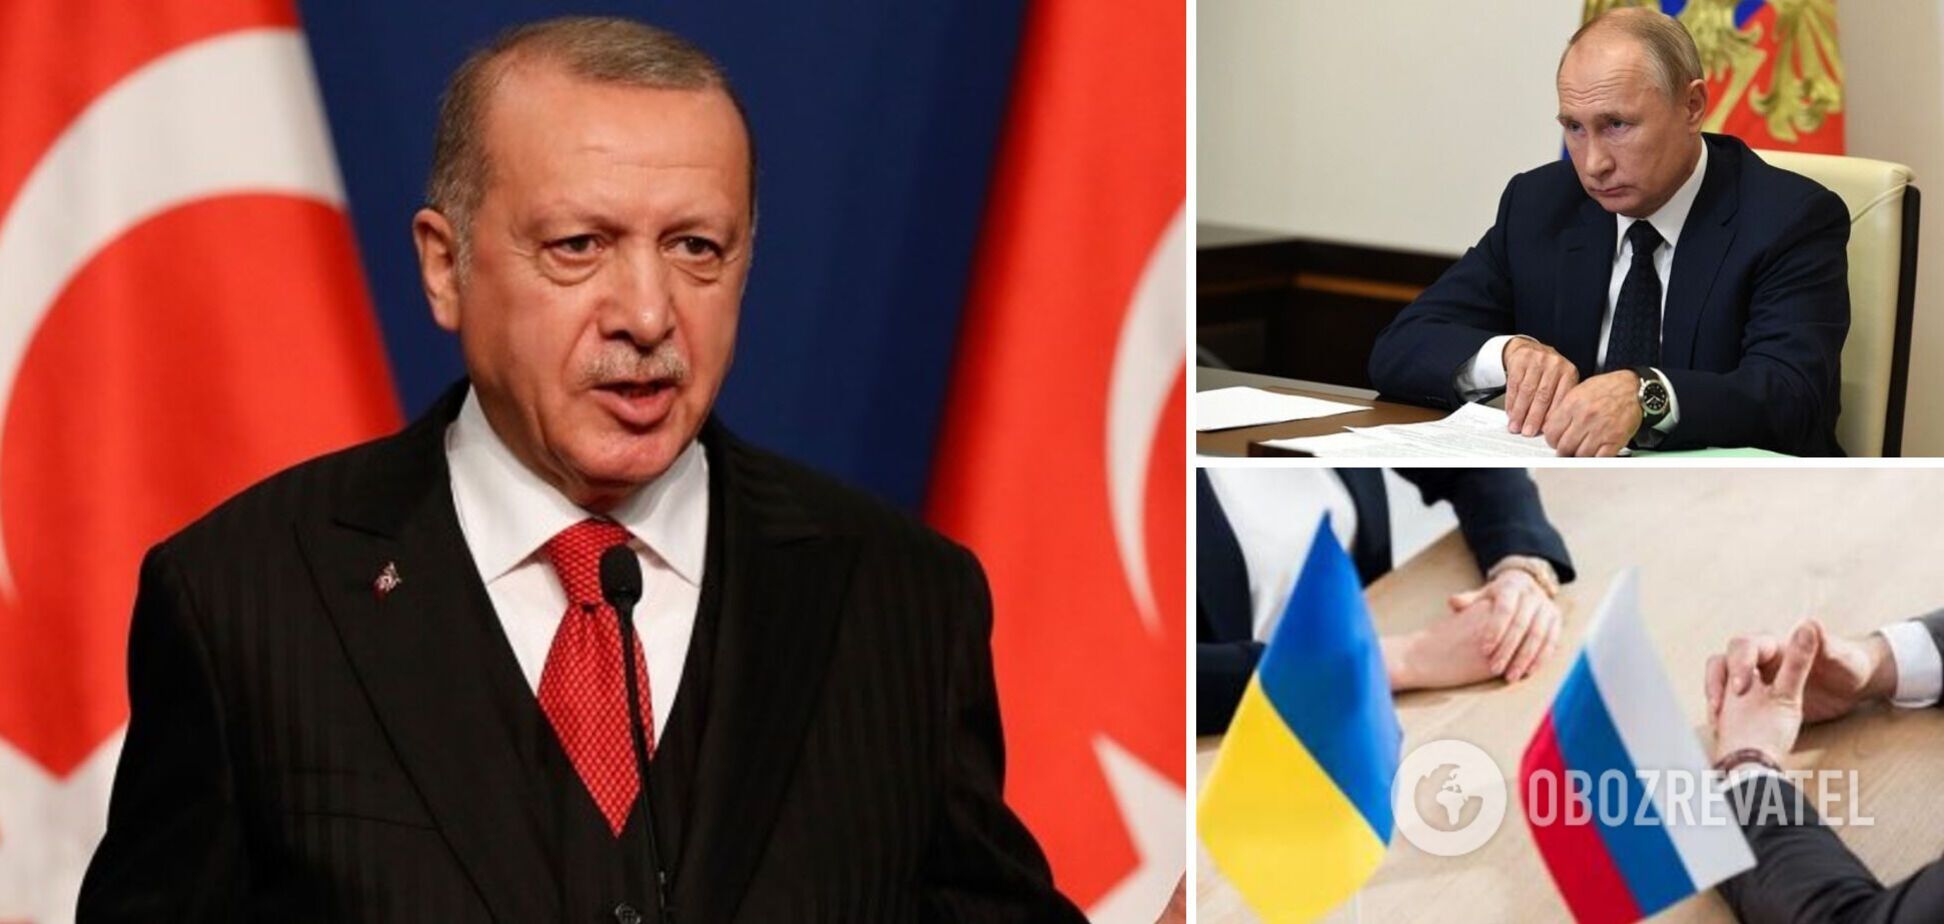 'На горизонті немає перспективи миру': Ердоган після переговорів з Путіним зробив заяву щодо війни в Україні 